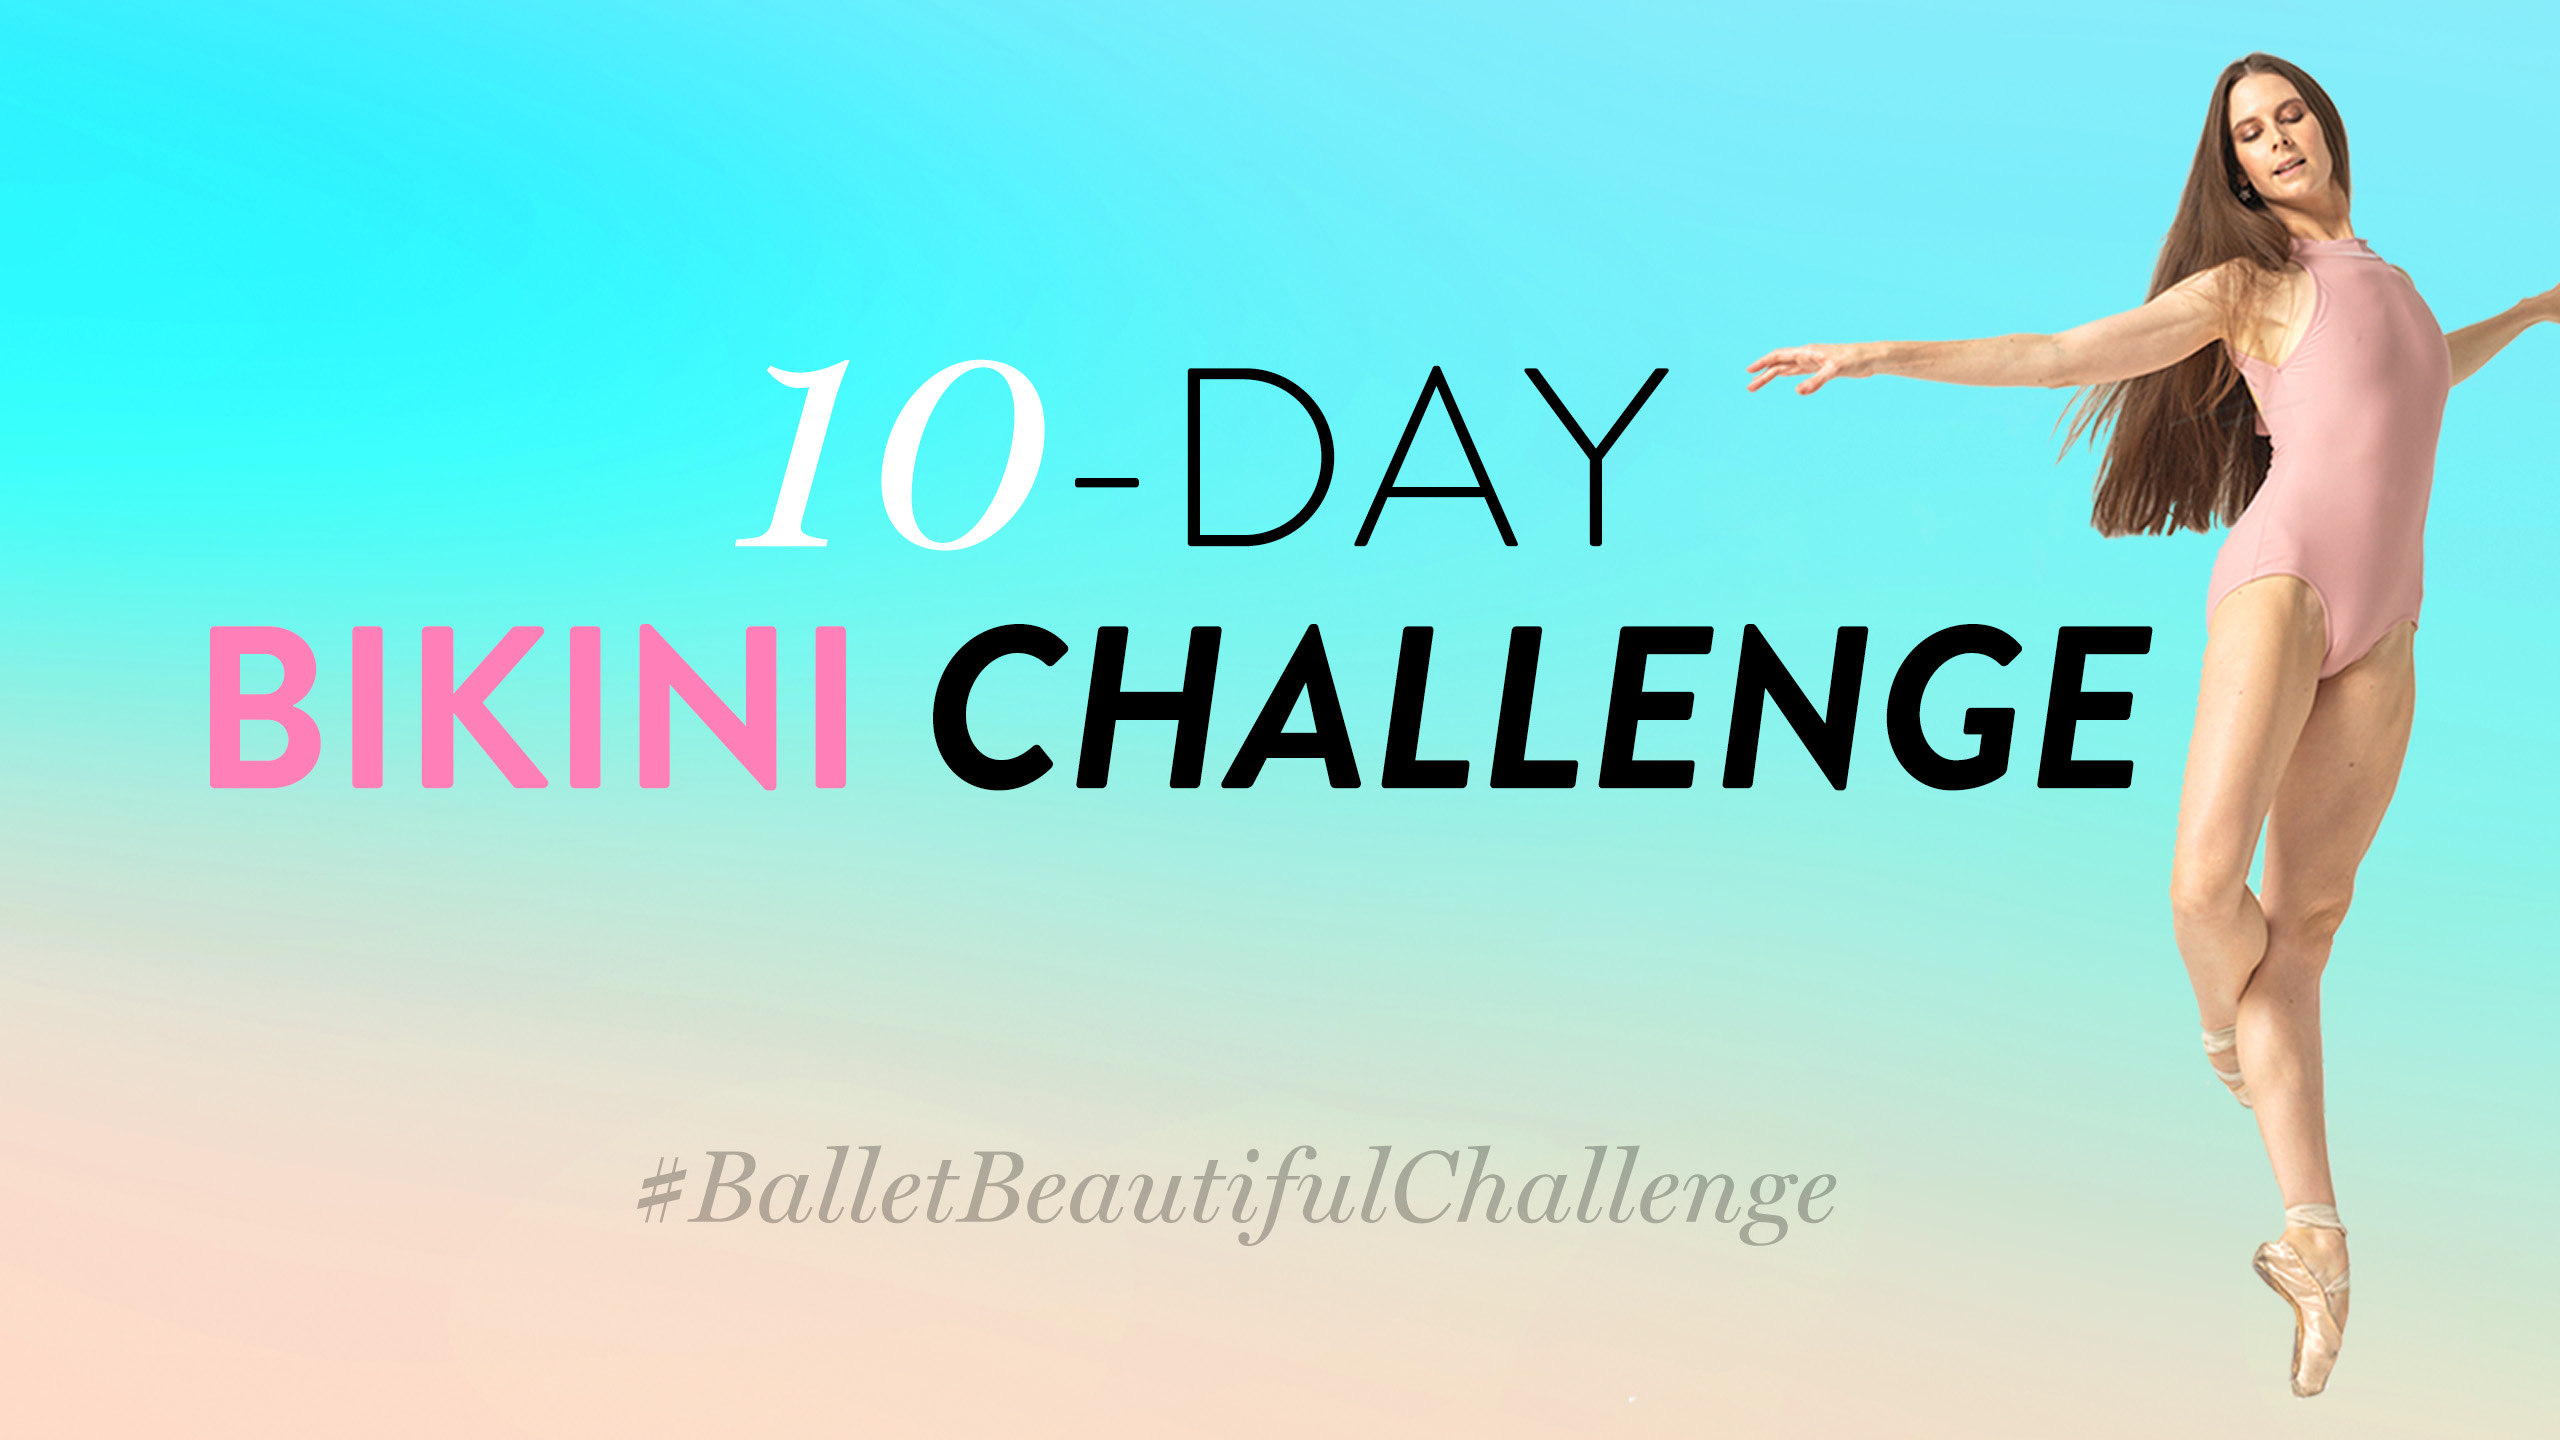 Bikini Challenge!